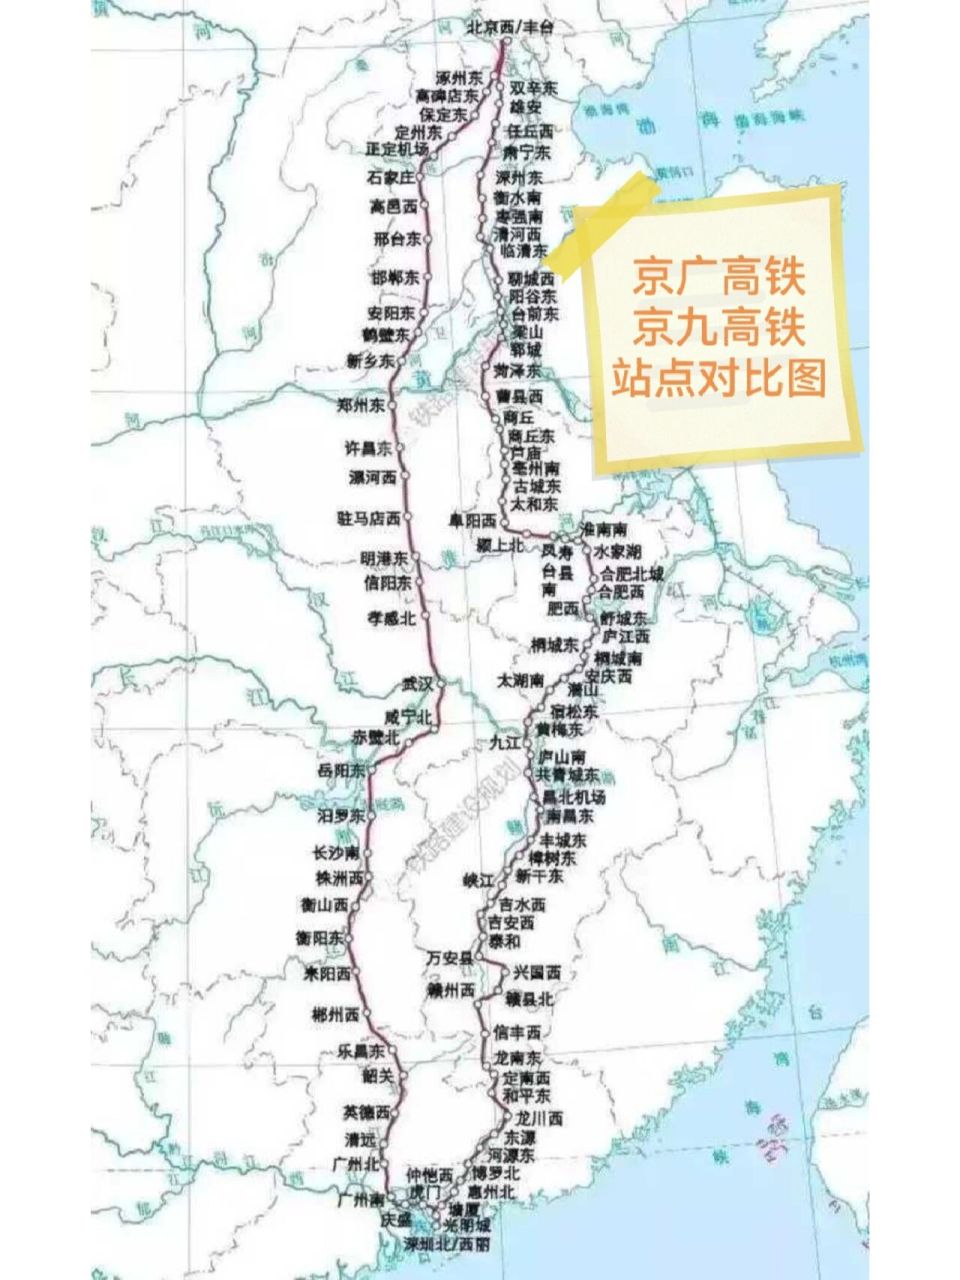 京九高铁和京广高铁都是贯穿祖国南北的高铁线,京广高铁比京九修偷哪